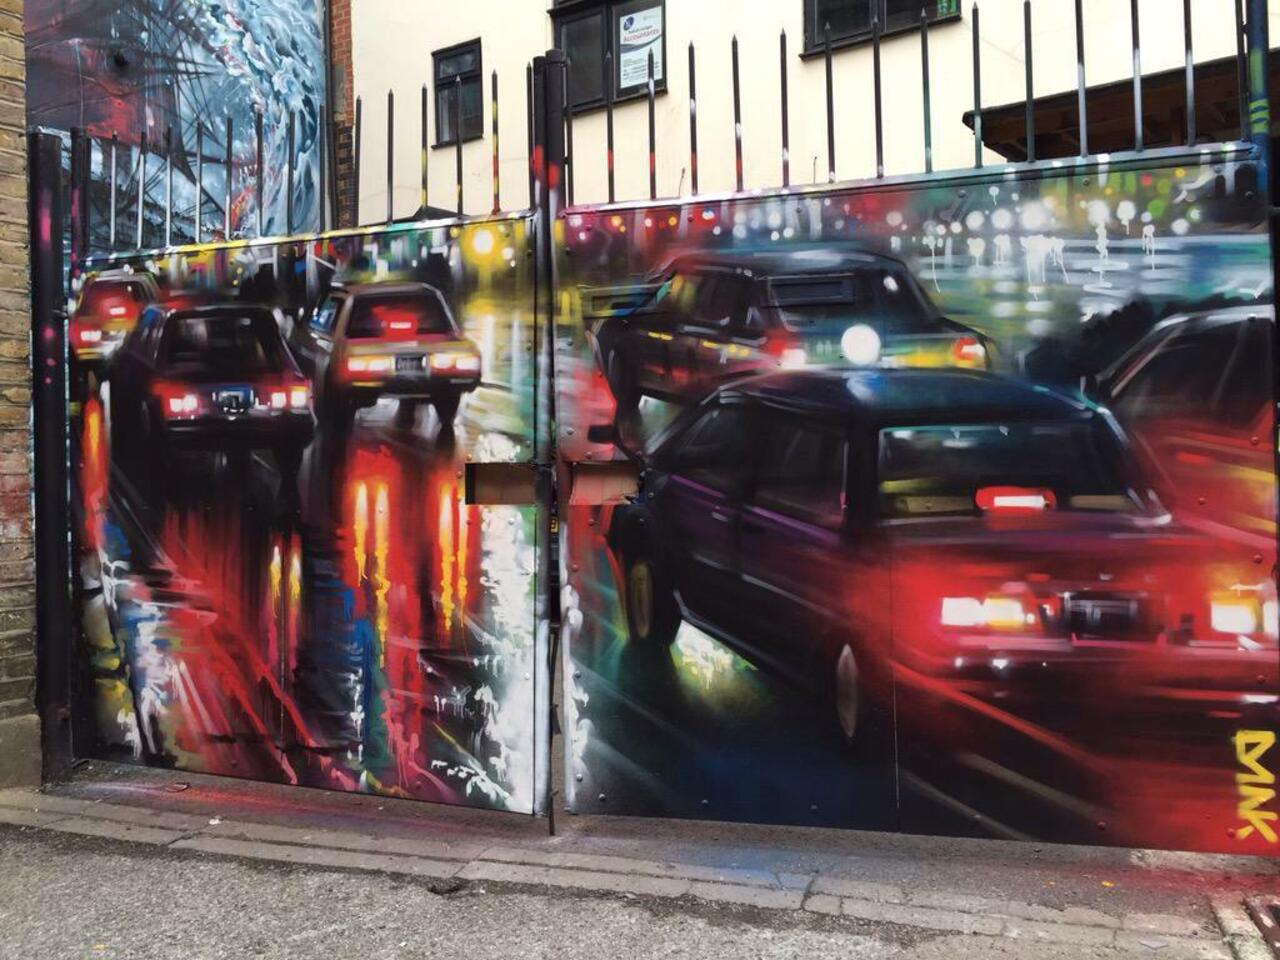 New Street Art by DanKitchener in Brick Lane London 

#art #graffiti #mural #streetart http://t.co/qZTv2H8Skc